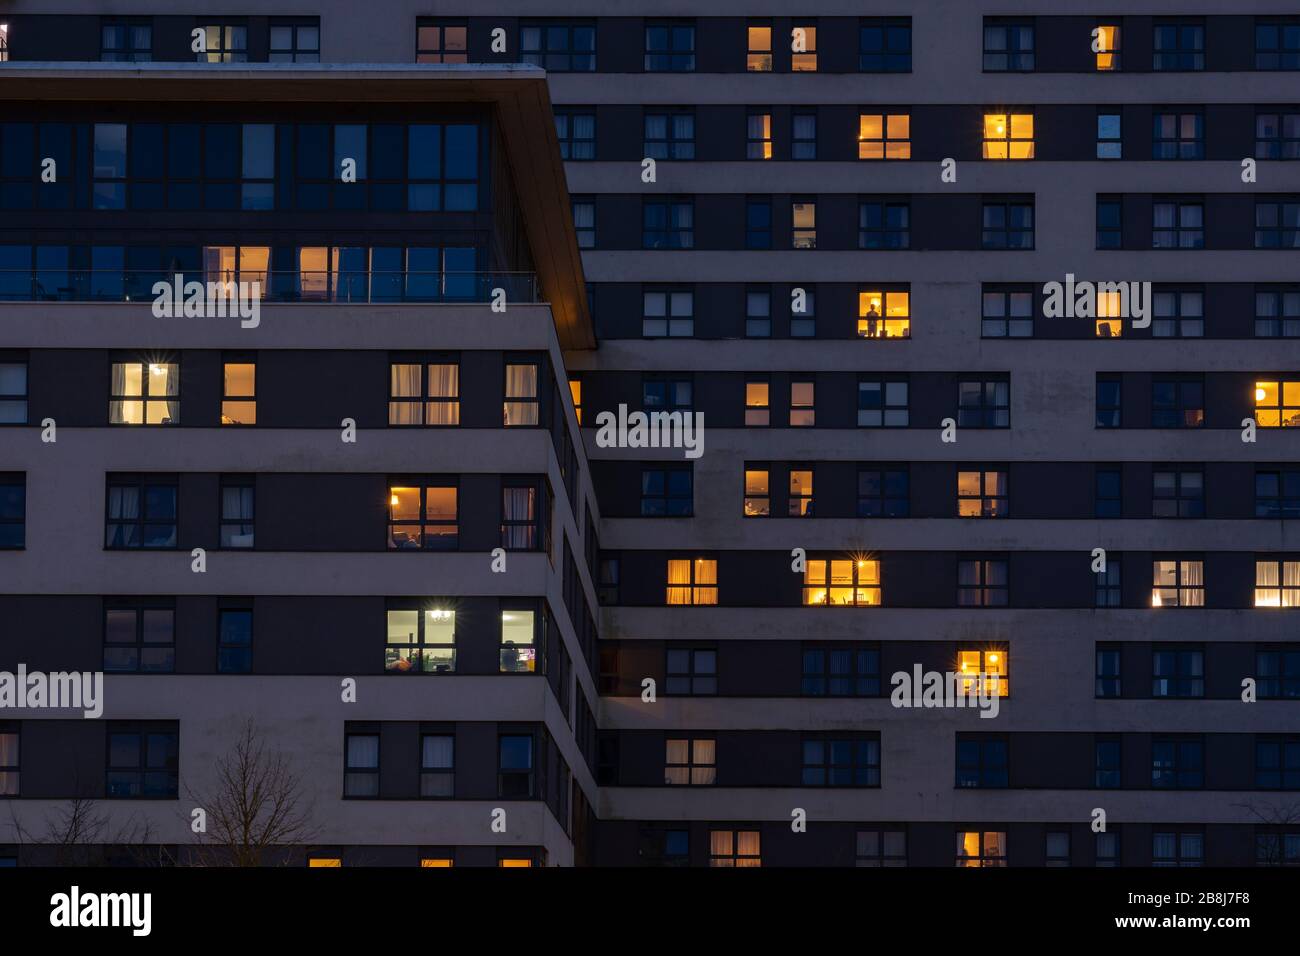 Appartements illuminés la nuit à Skyline Plaza, un immeuble de bureaux rénové, Royaume-Uni. concept : marché locatif, coupures de courant, investissement immobilier Banque D'Images